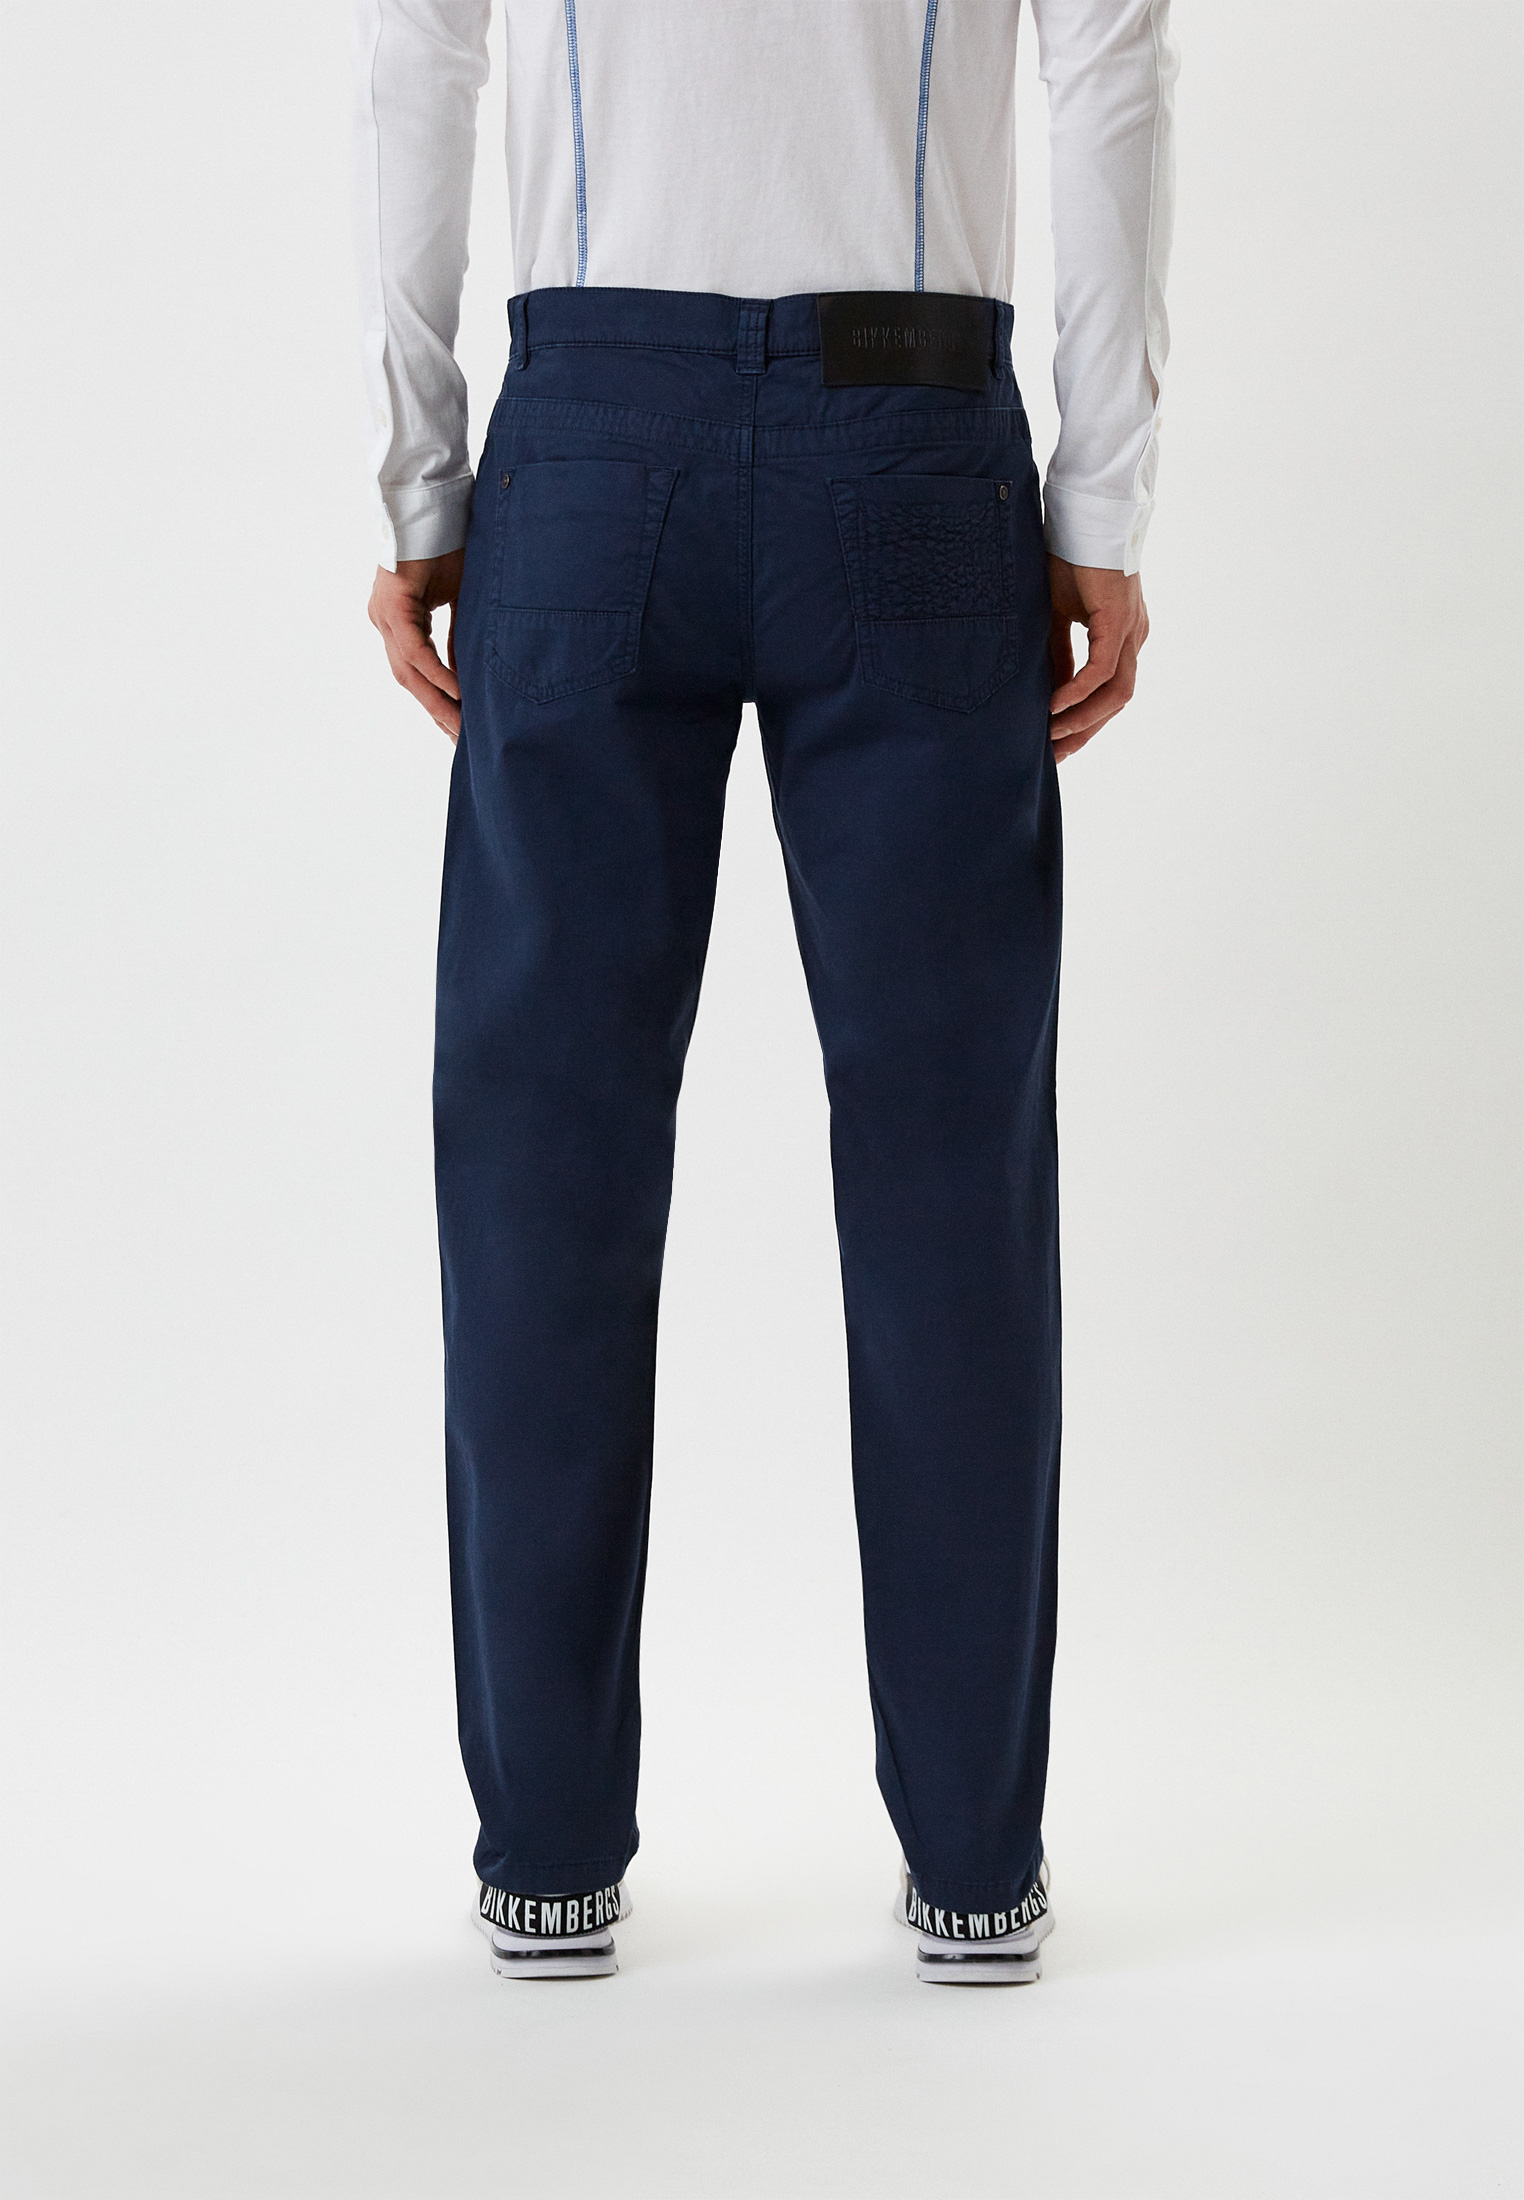 Мужские повседневные брюки Bikkembergs (Биккембергс) C Q 102 21 S 3513: изображение 7